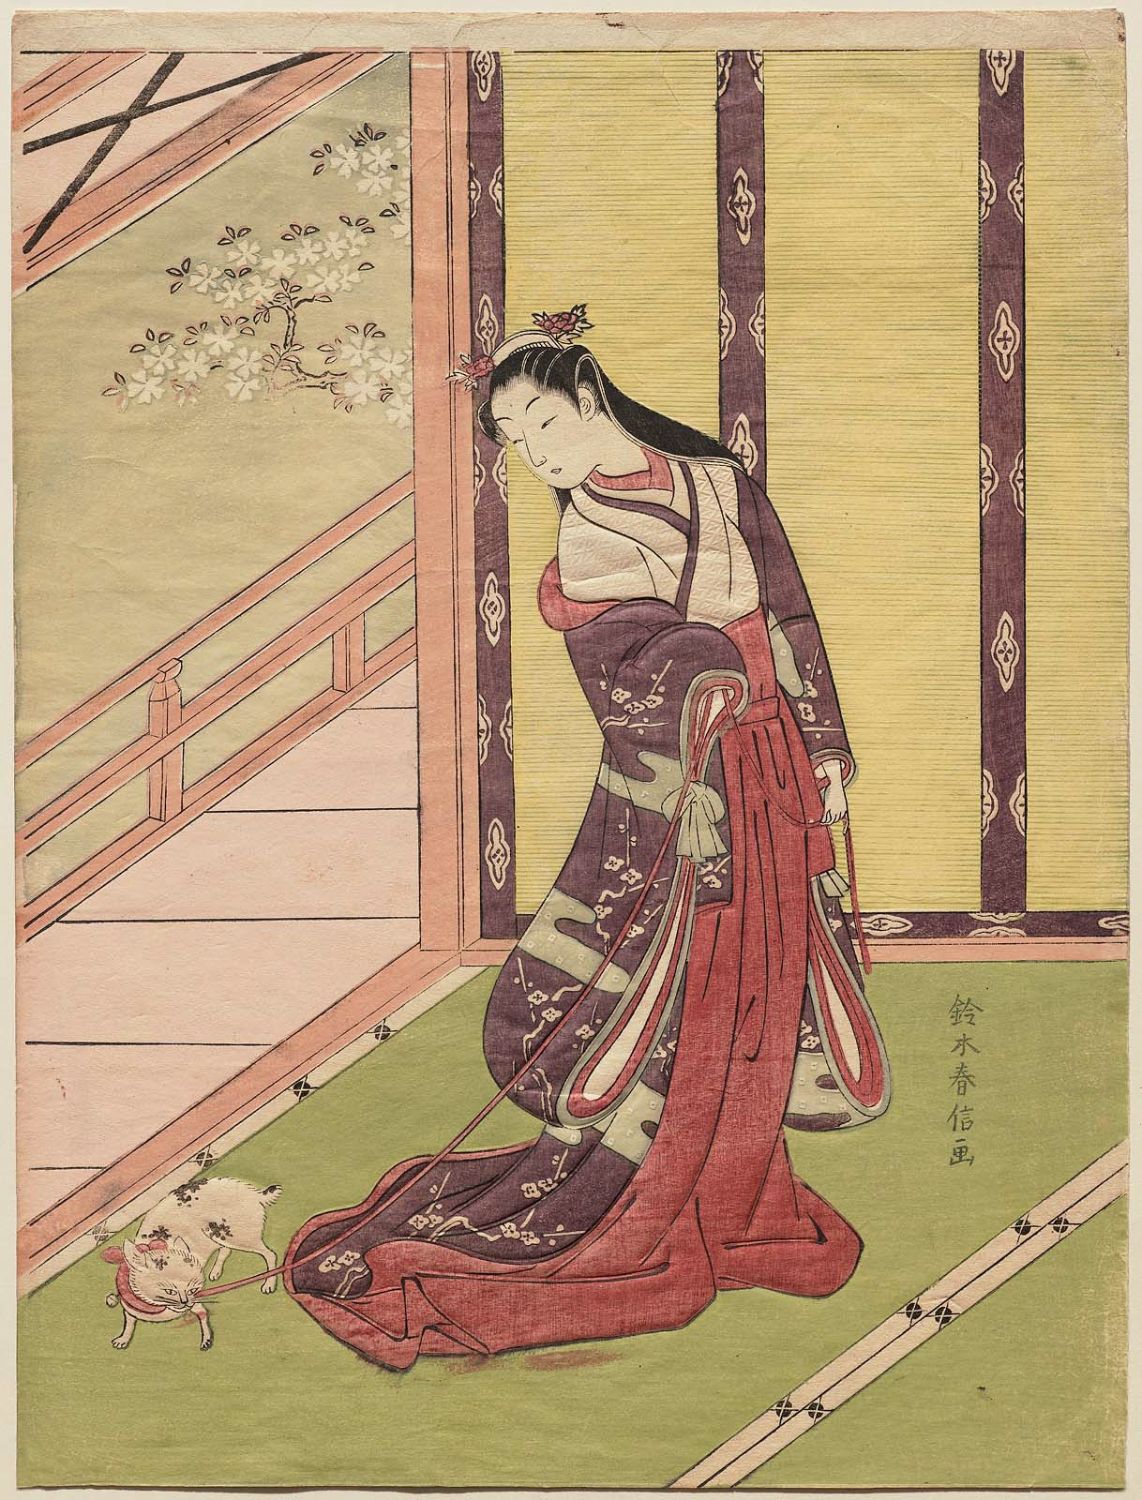 鈴木春信: The Third Princess (Nyosan no miya) and Her Cat 